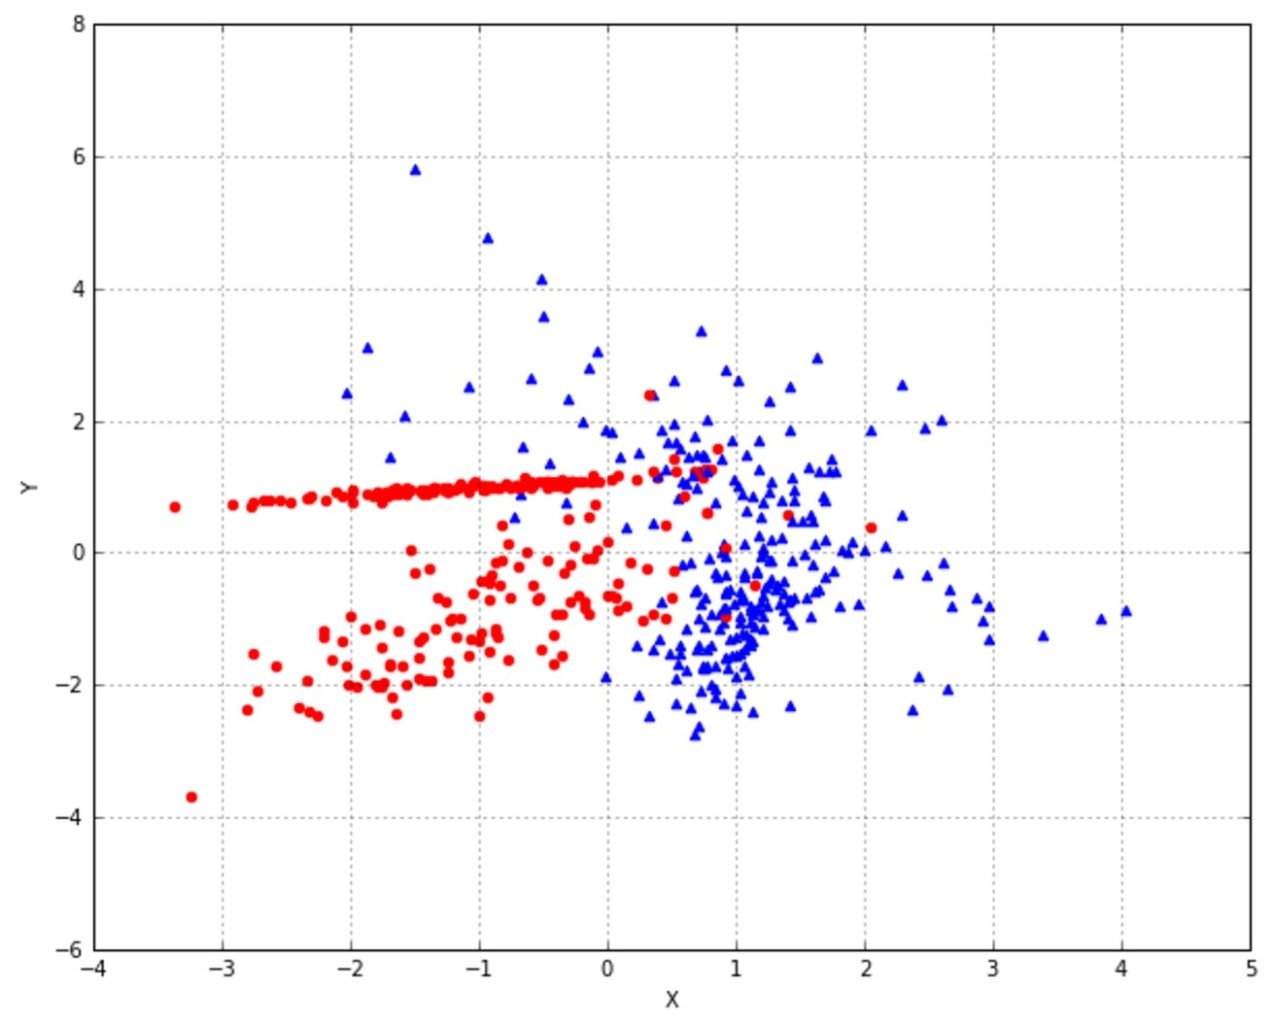 plot of the dataset